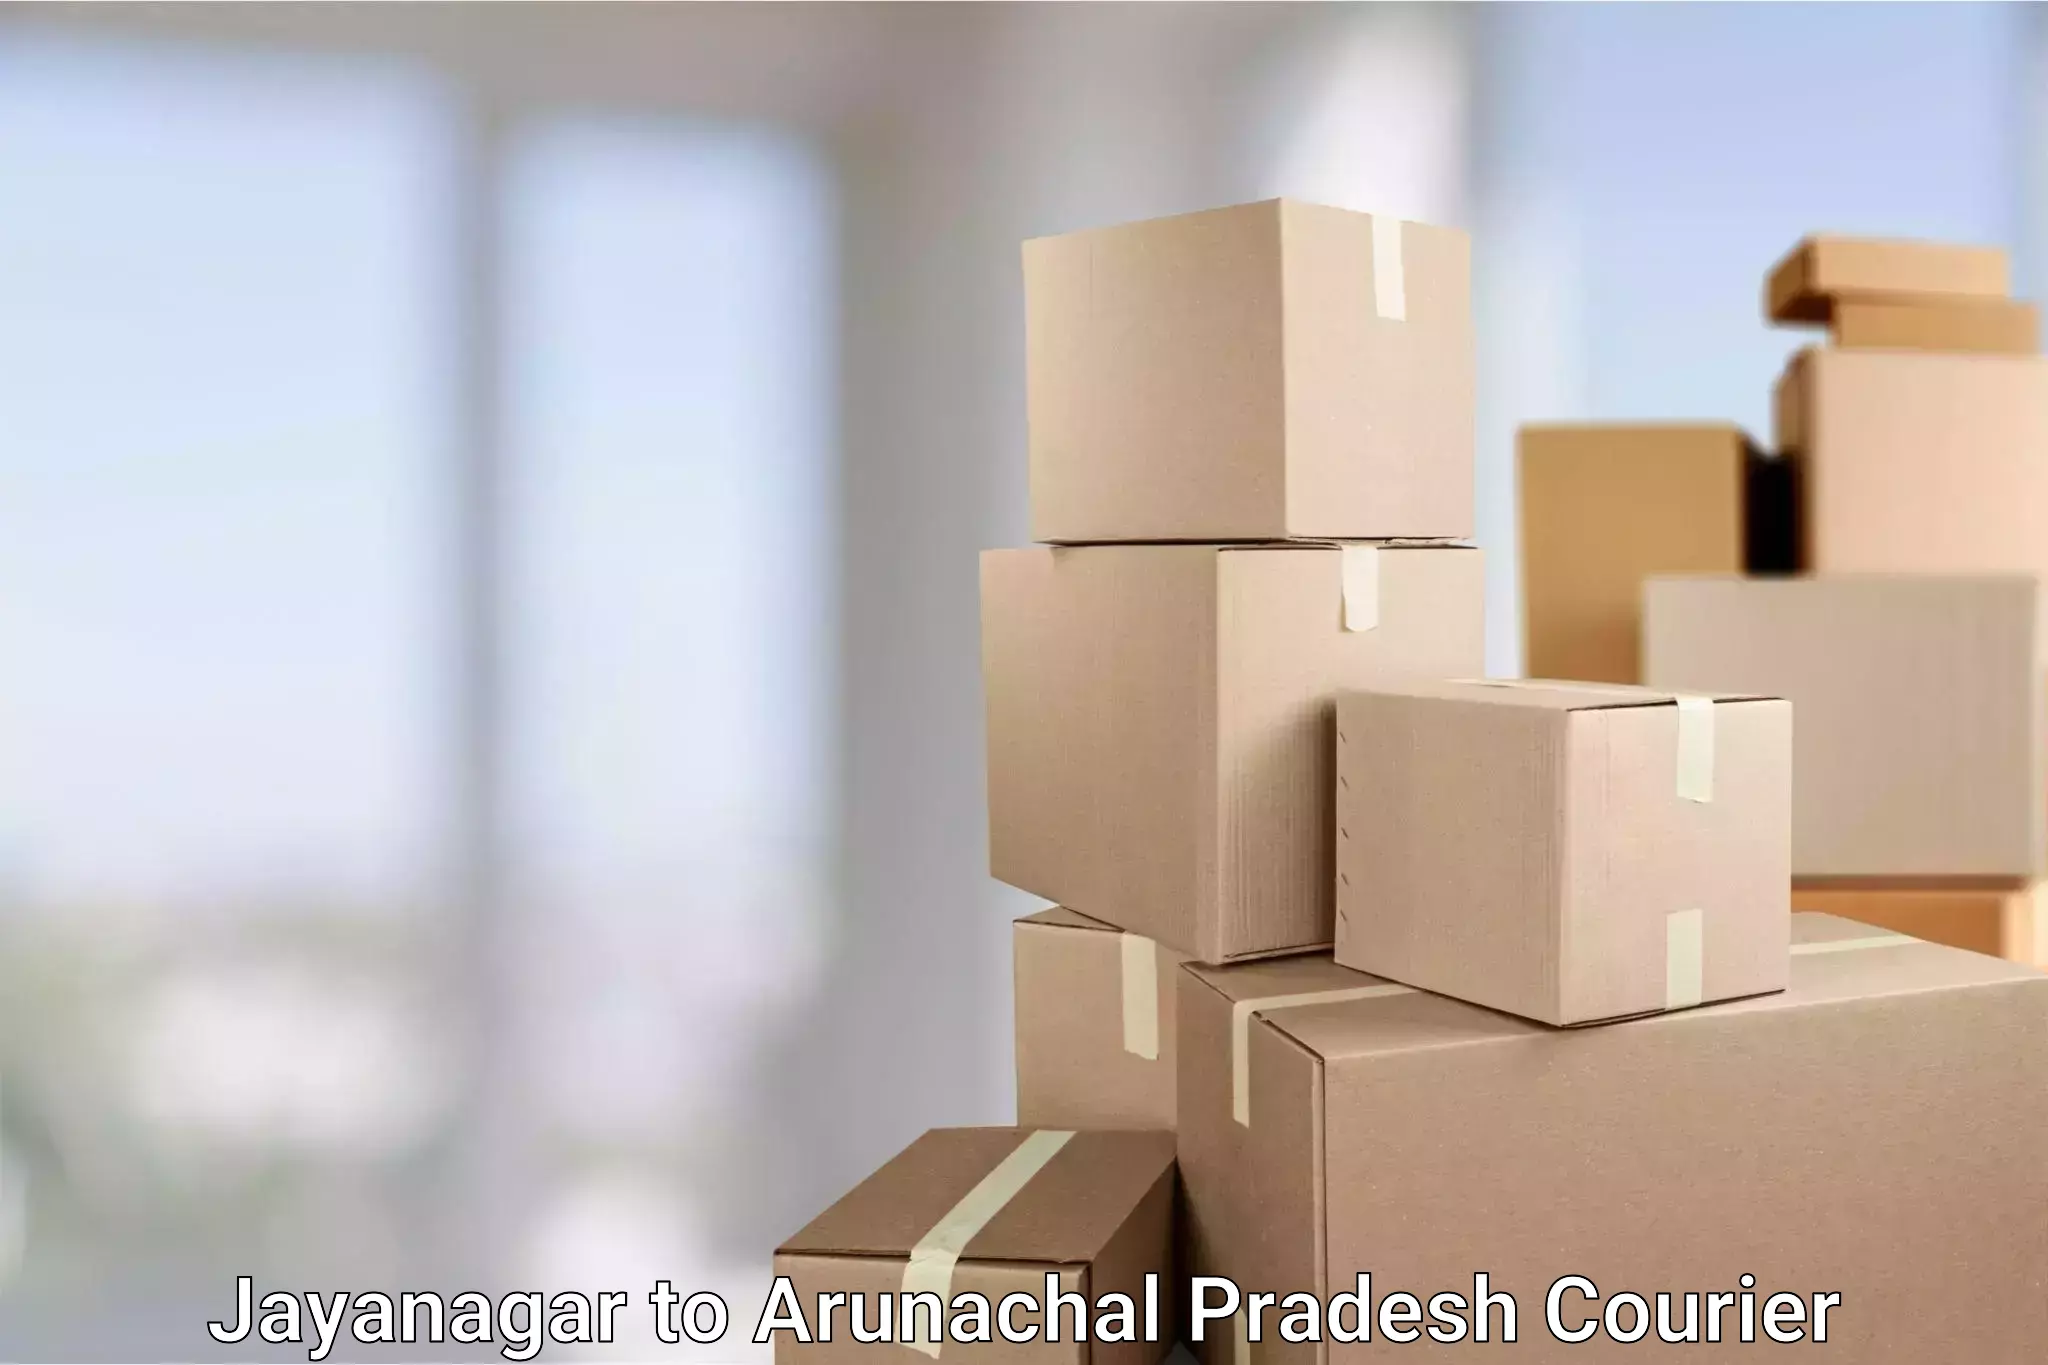 Automated parcel services Jayanagar to Arunachal Pradesh